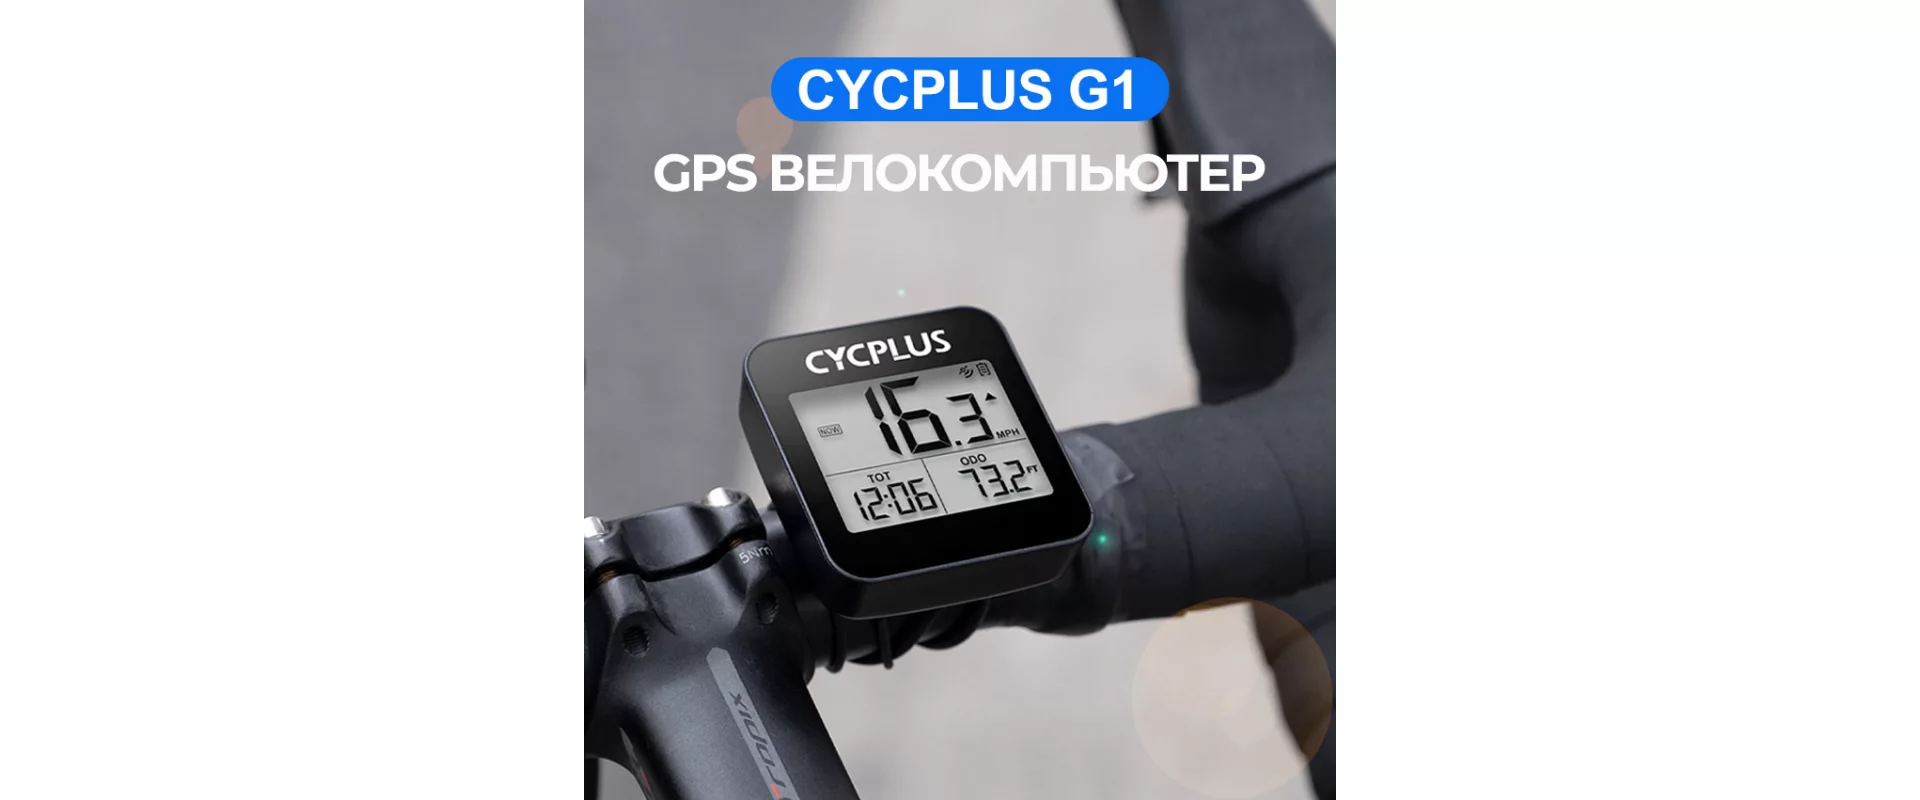 Cycplus G1 GPS 9 функций / Велокомпьютер беспроводной